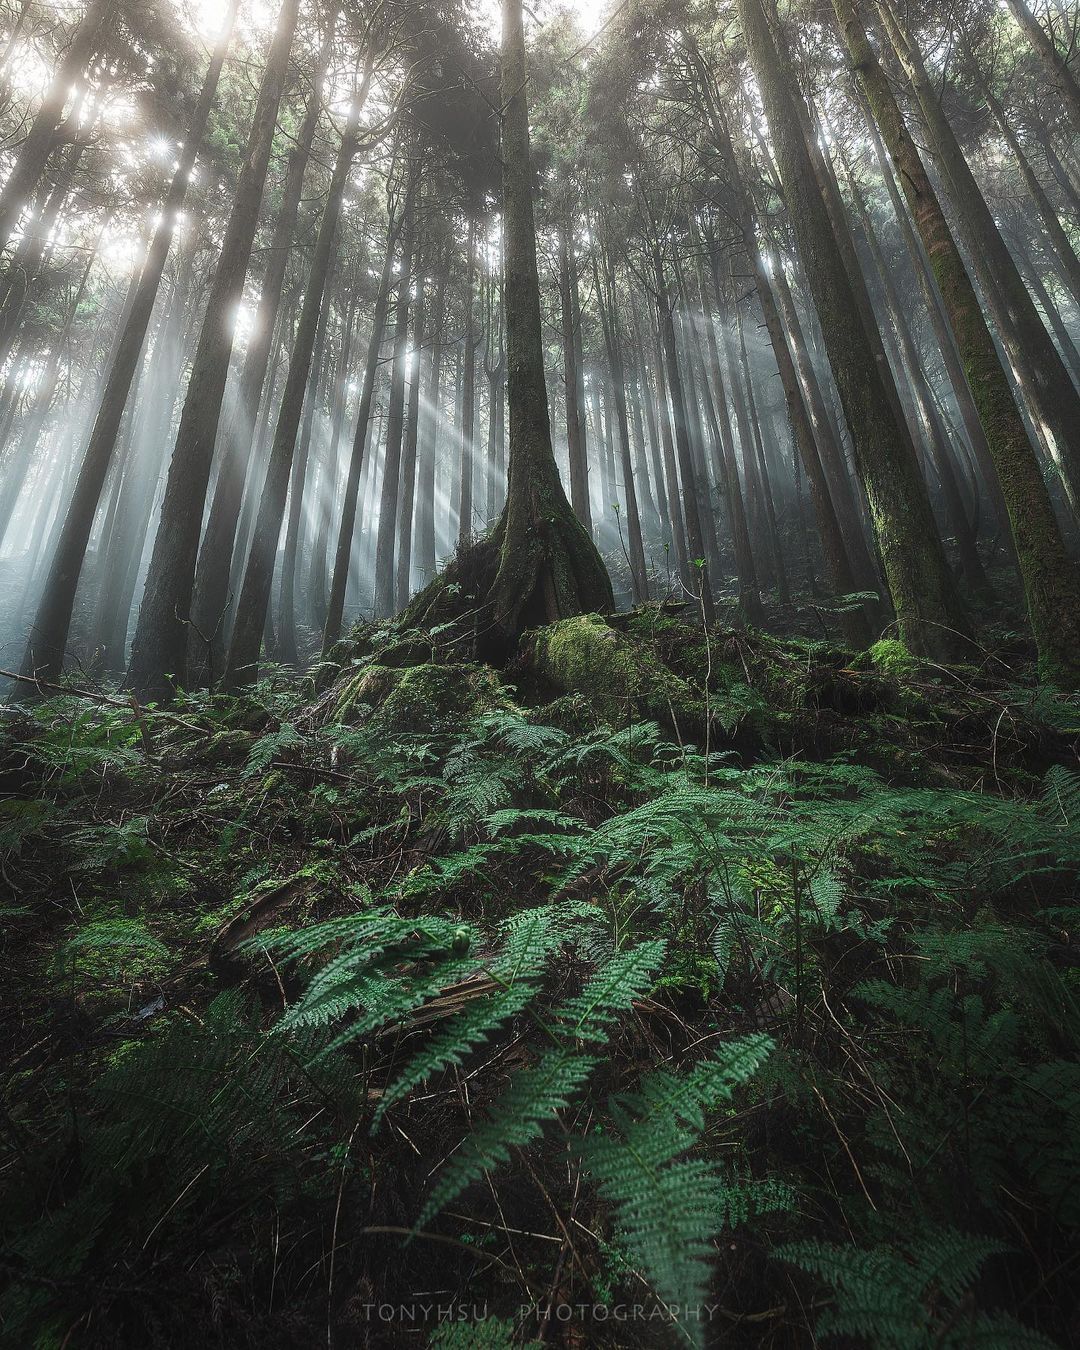 特富野古道一隅，有時候生活中有些苦悶，走到戶外看到這樣的森林，是不是能一解憂愁呢照片授權 @tonyhsu.613 -⠀歡迎在您的...